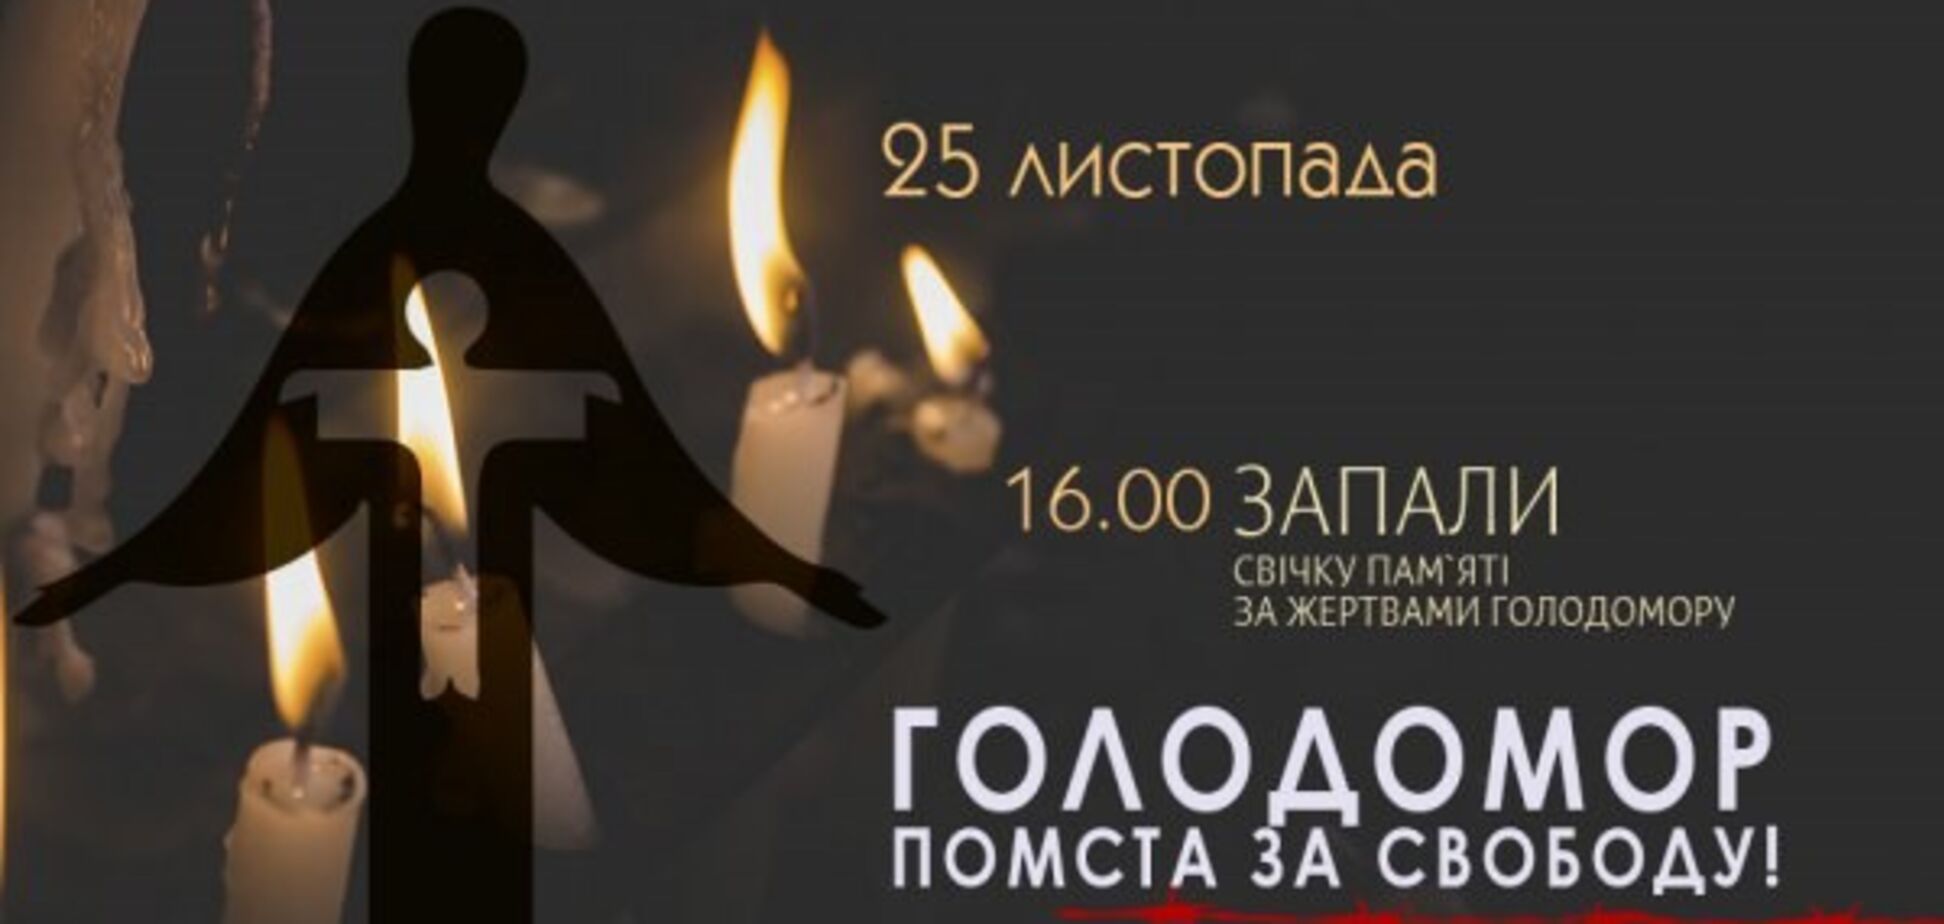 Помста за свободу: в Україні вшанували пам'ять жертв Голодоморів